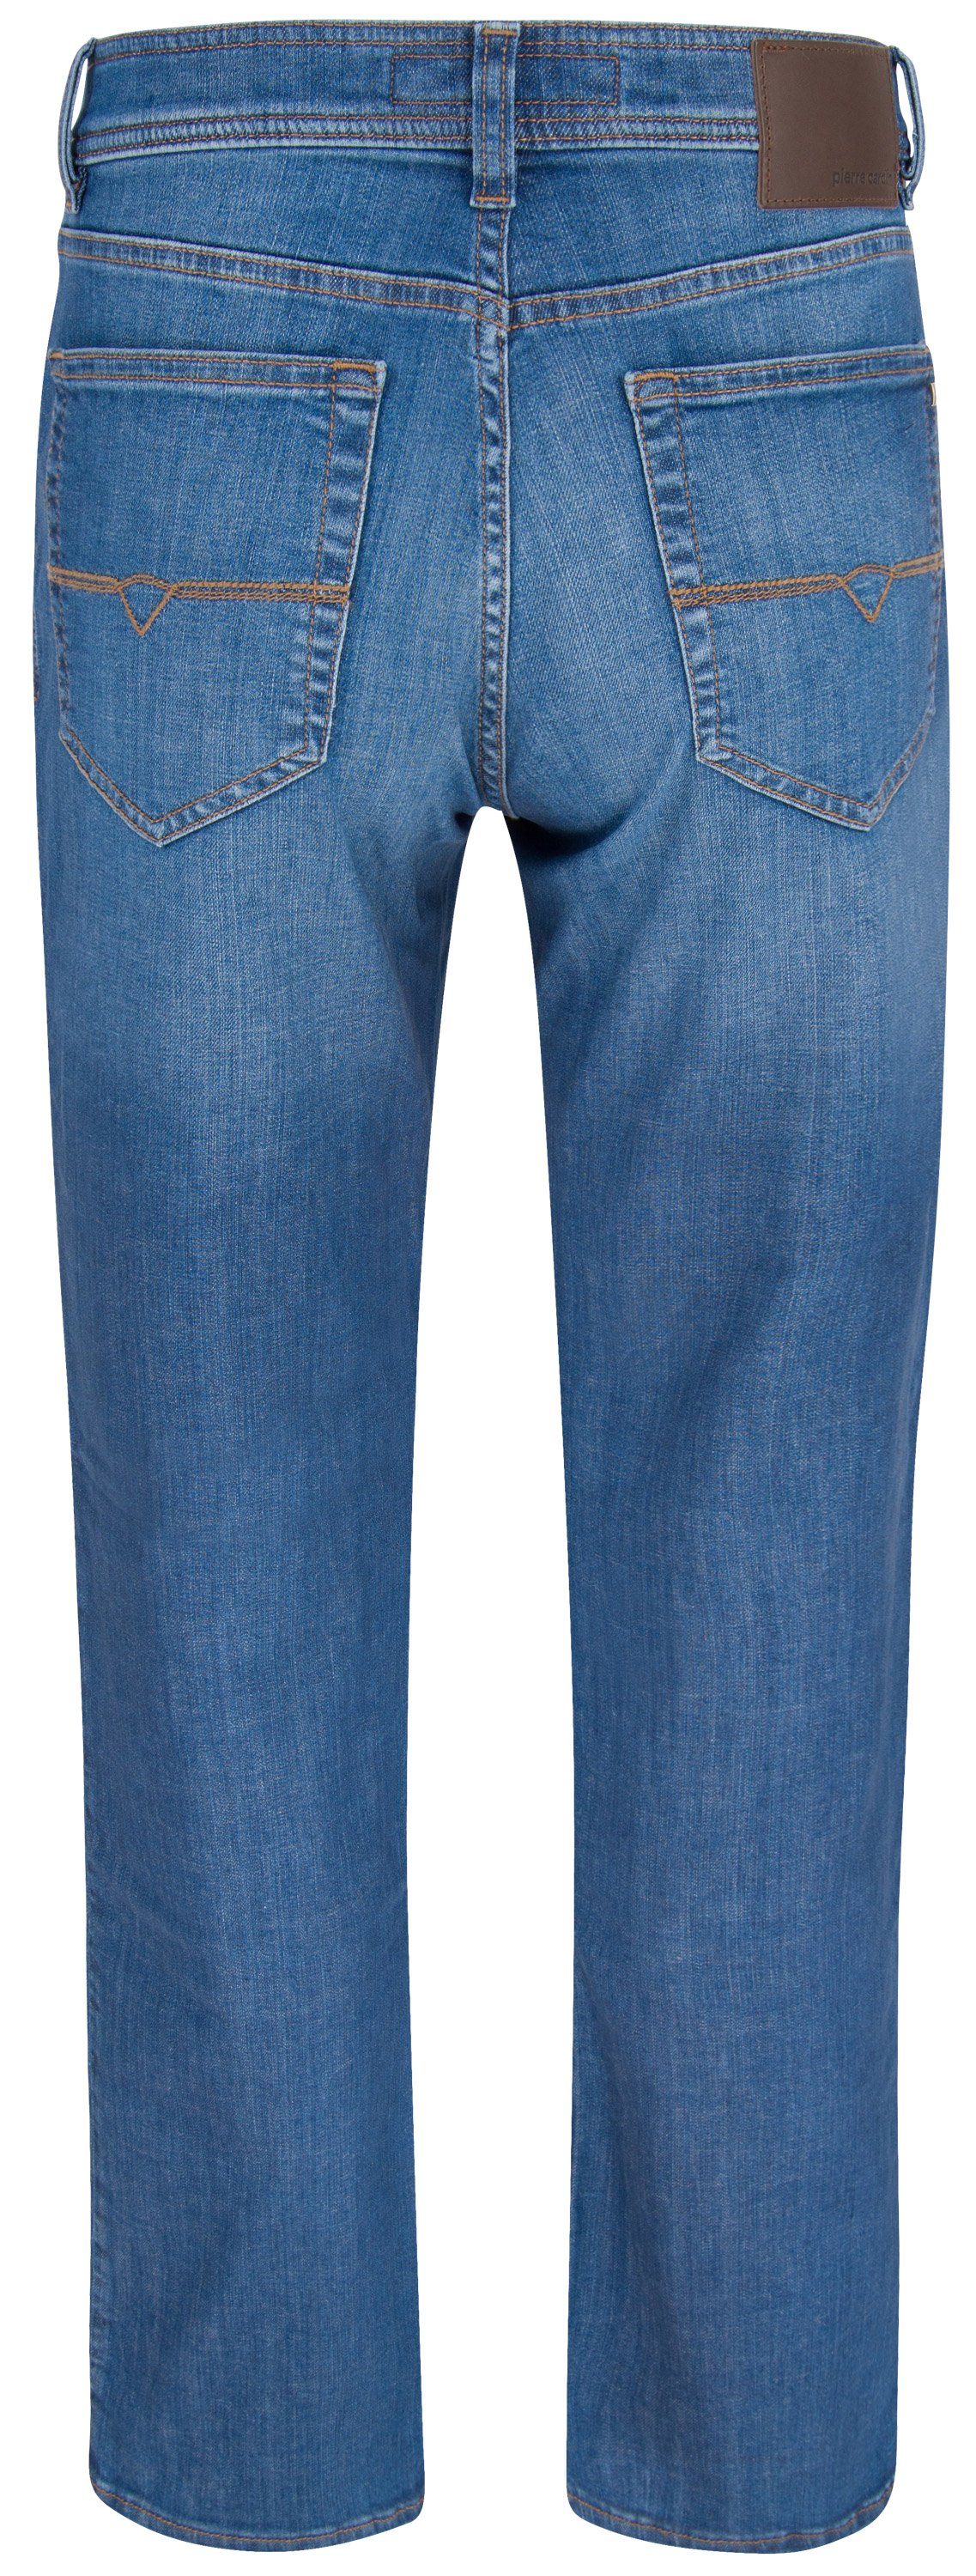 Pierre Cardin 5-Pocket-Jeans PIERRE 3231 - sky blue 7200.02 CARDIN used DIJON